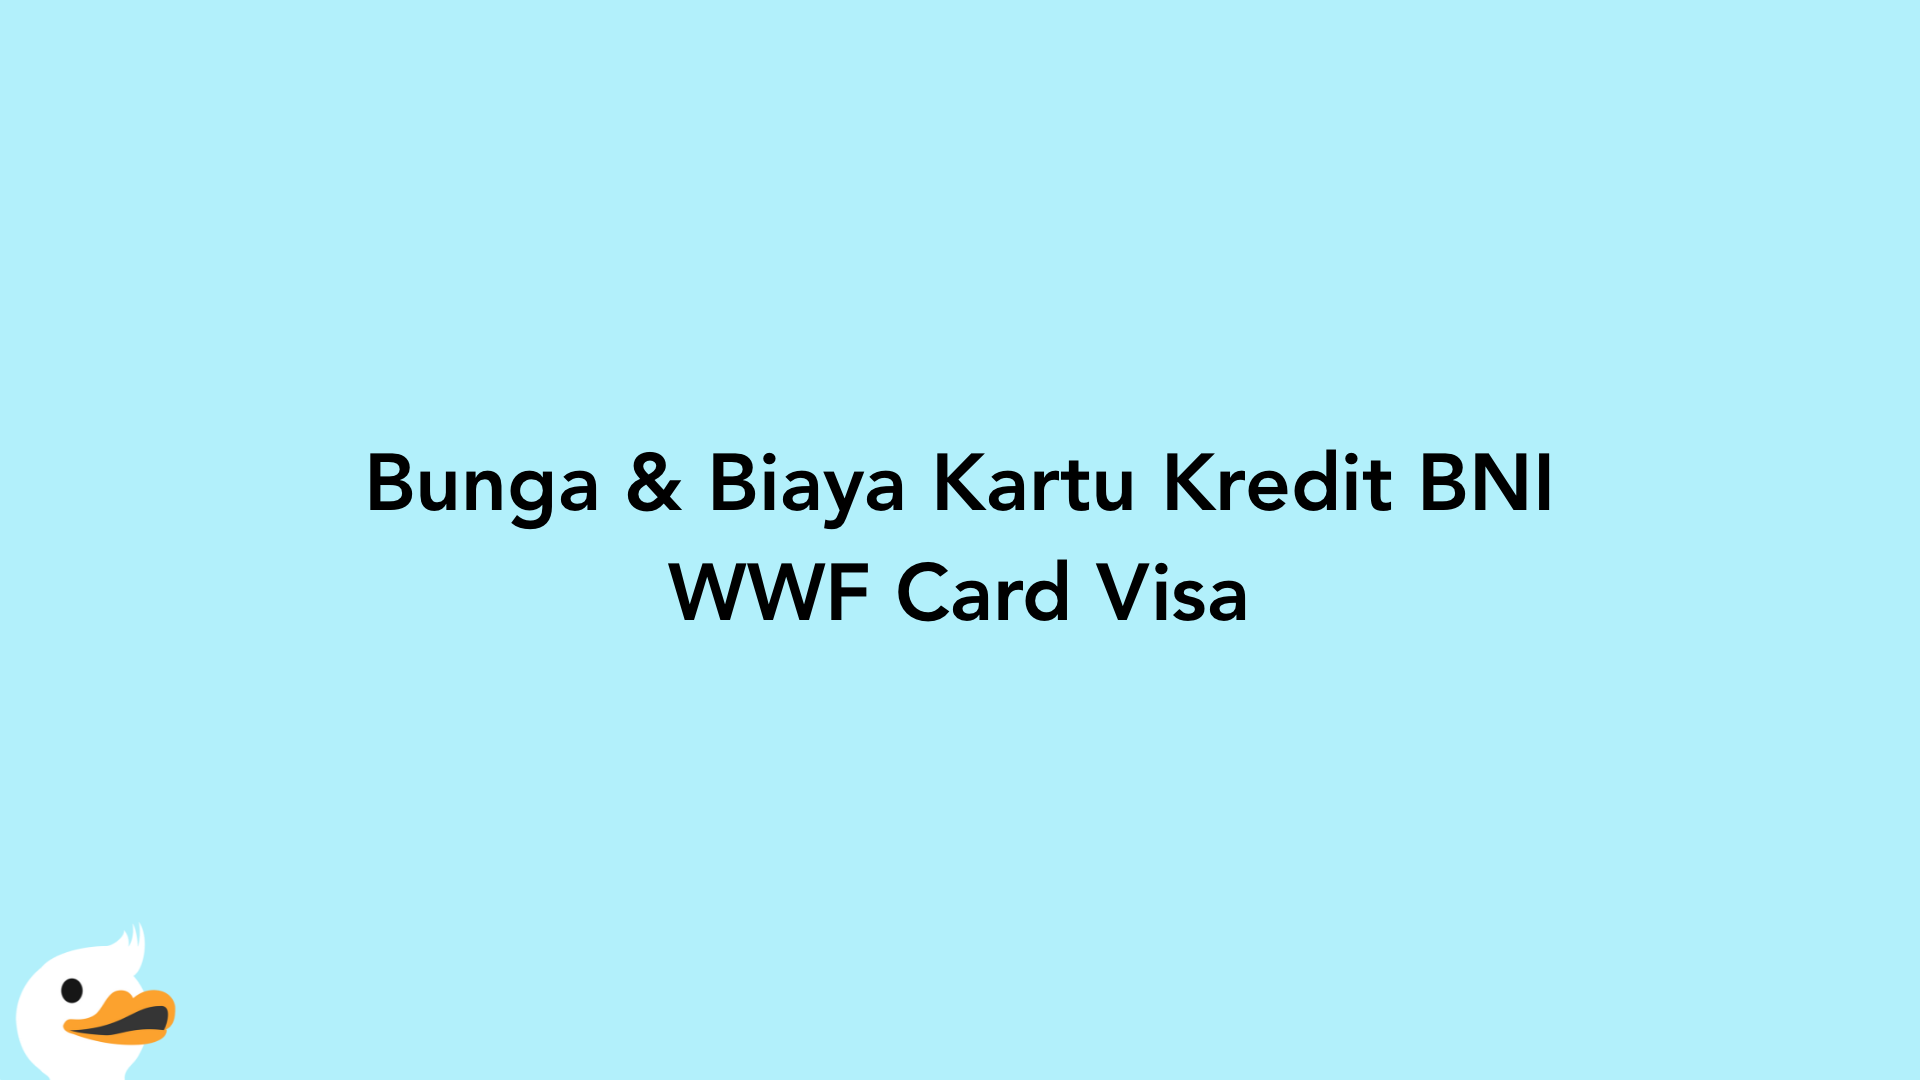 Bunga & Biaya Kartu Kredit BNI WWF Card Visa